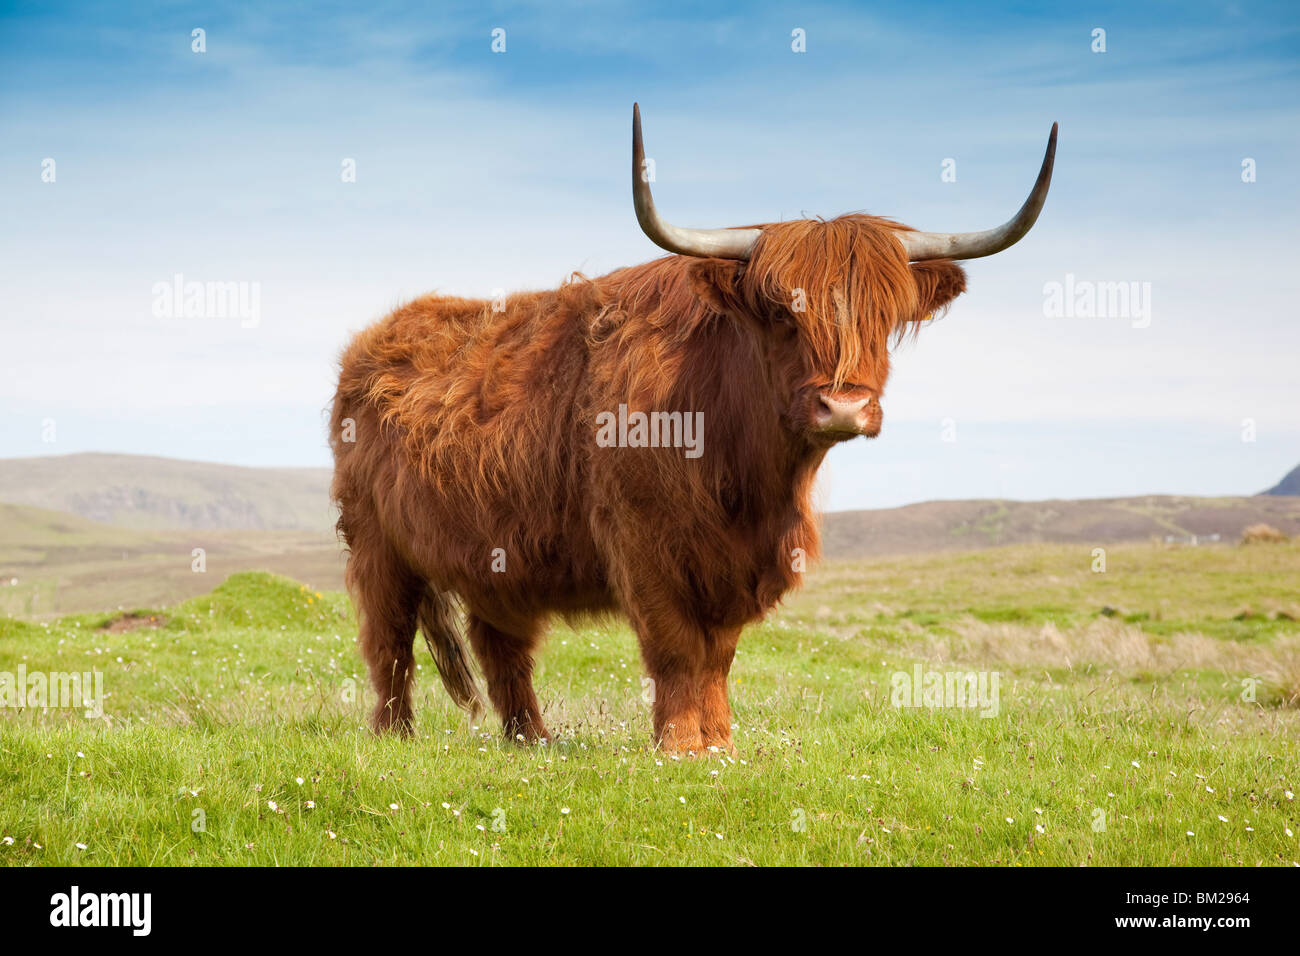 Highland cattle, Isle of Skye, Scotland, UK Stock Photo